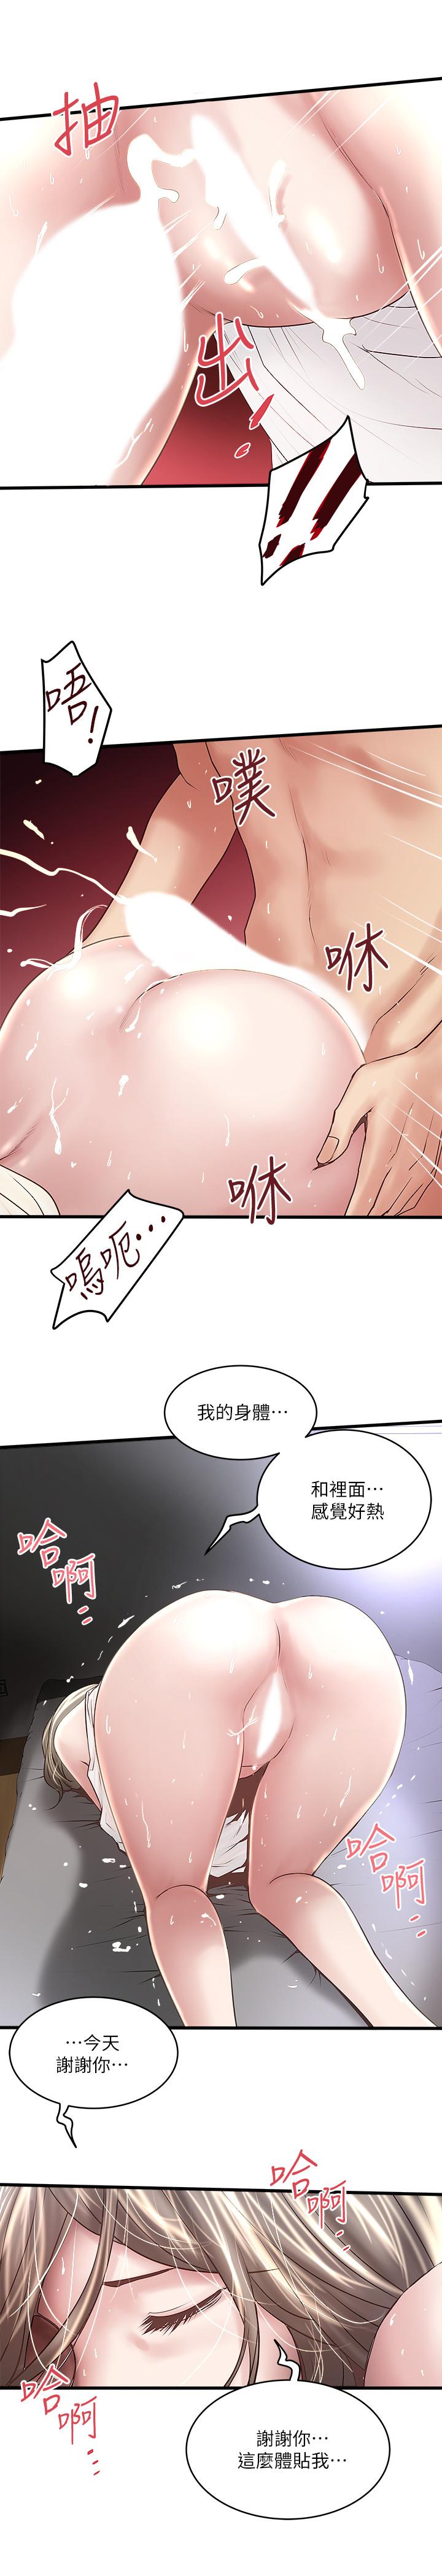 韩国污漫画 下女,初希 第54话-初希不愿提及的过往 27